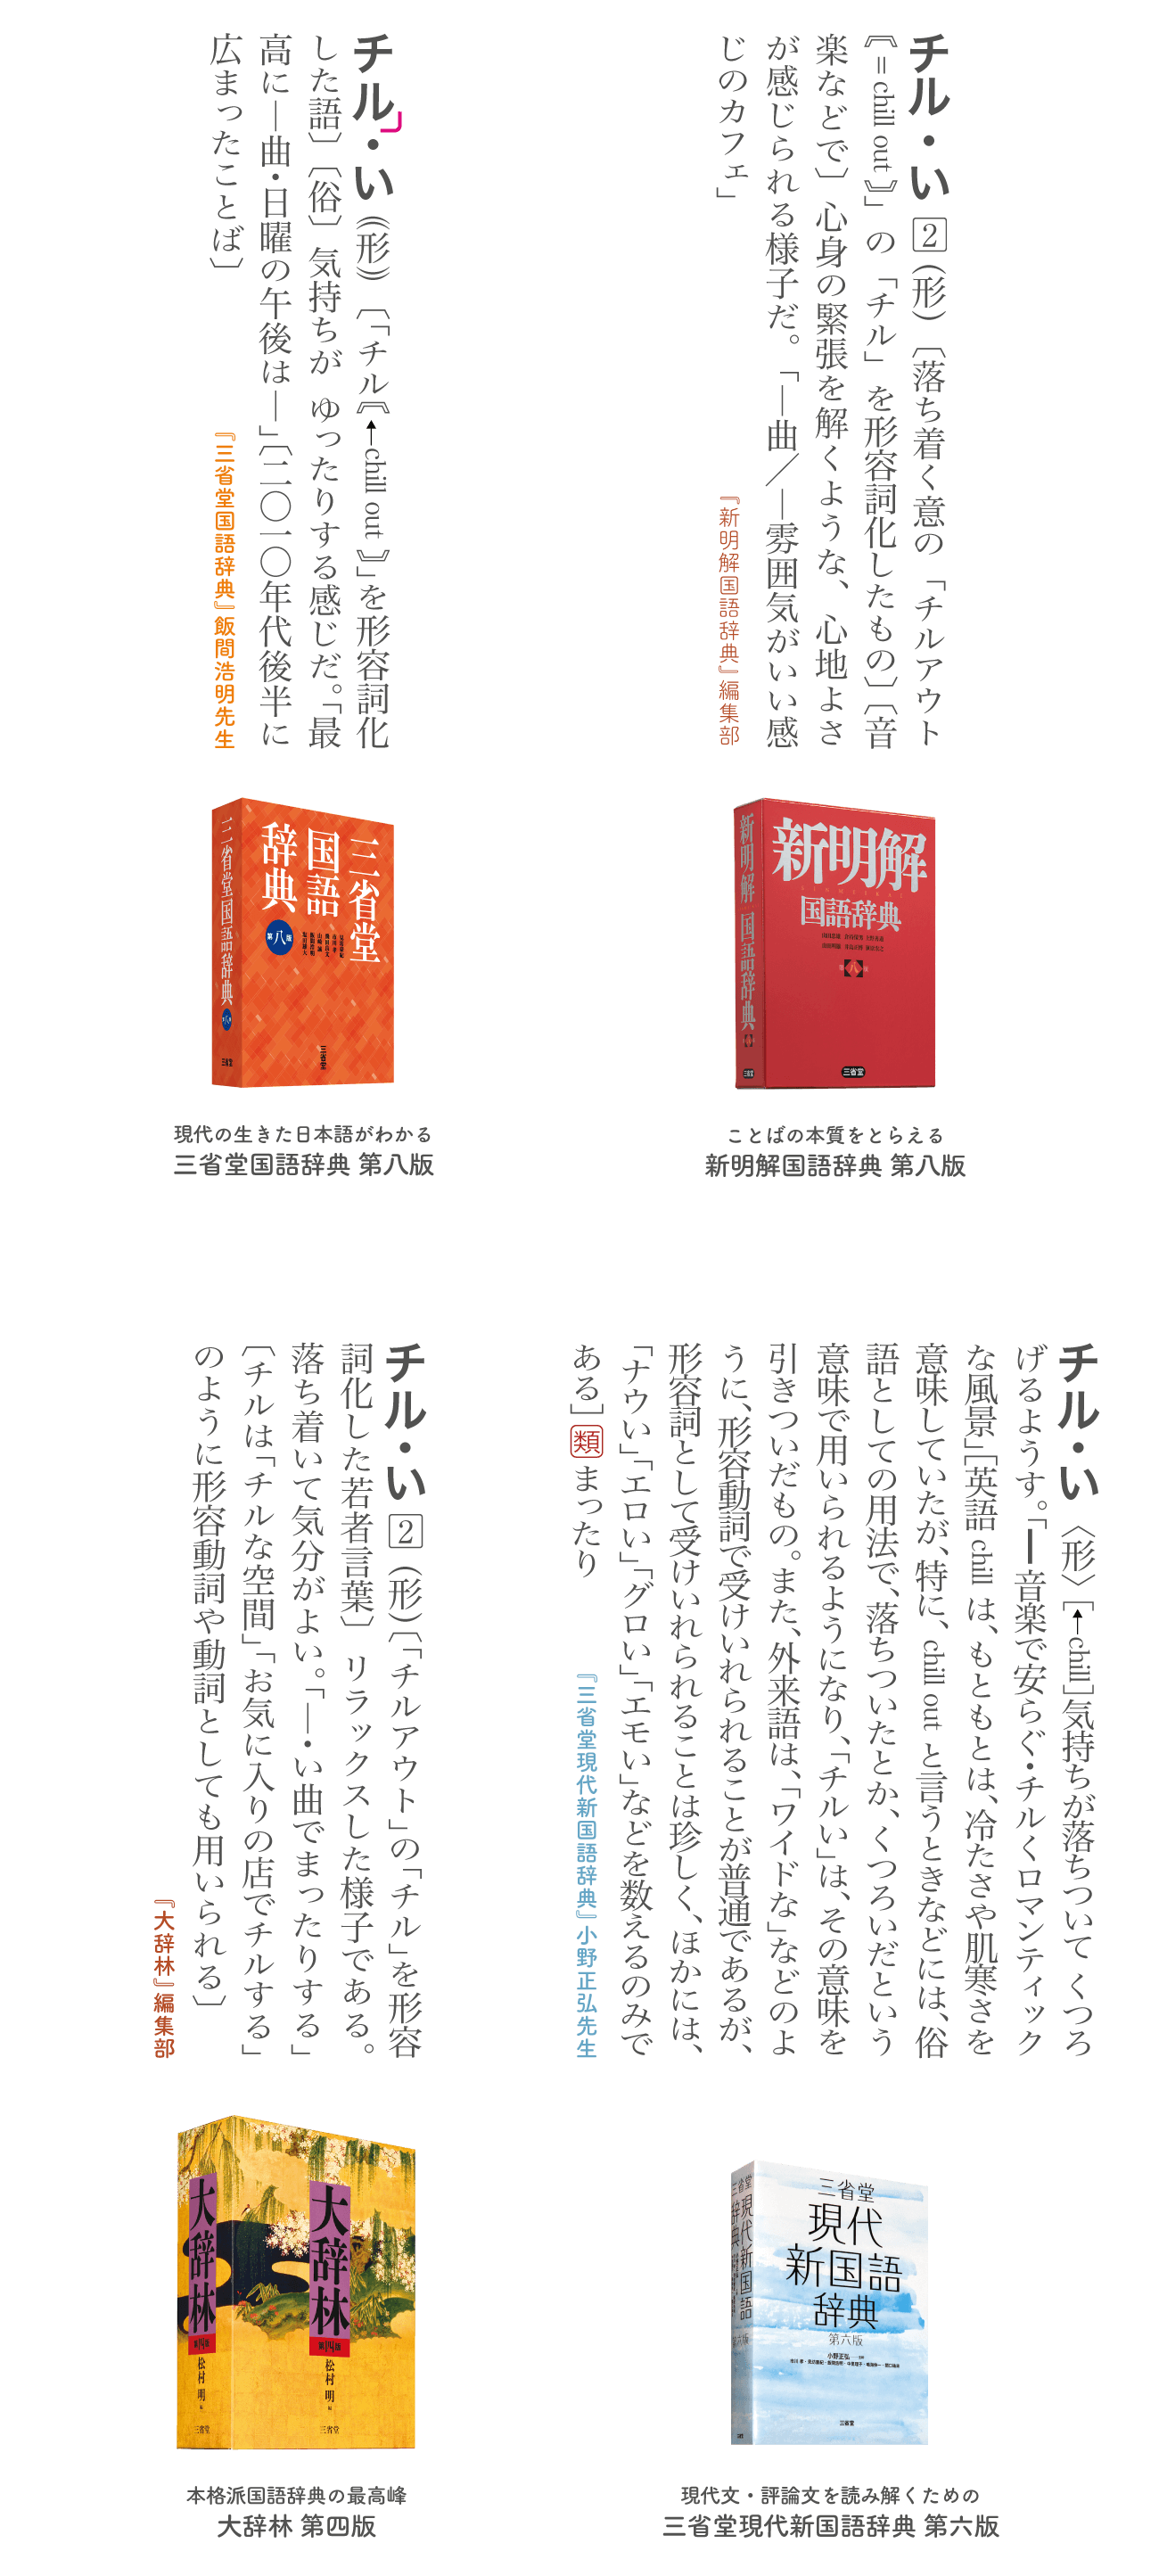 三省堂 辞書を編む人が選ぶ 今年の新語21